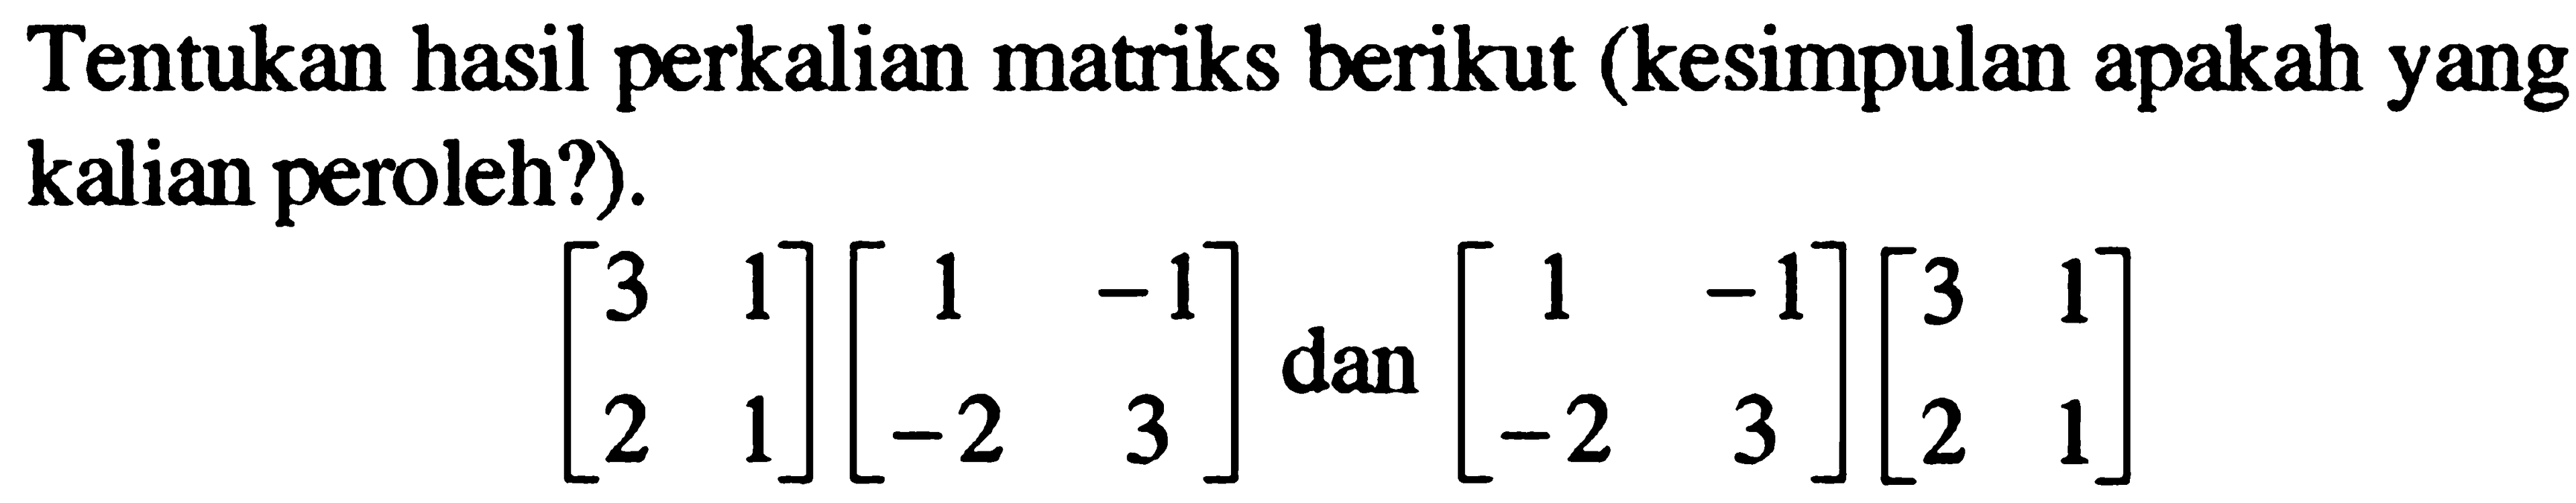 Tentukan hasil perkalian matriks berikut (kesimpulan apakah yang kalian peroleh?).[3 1 2 1][1 -1 -2 3] dan [1 -1 -2 3][3 1 2 1]